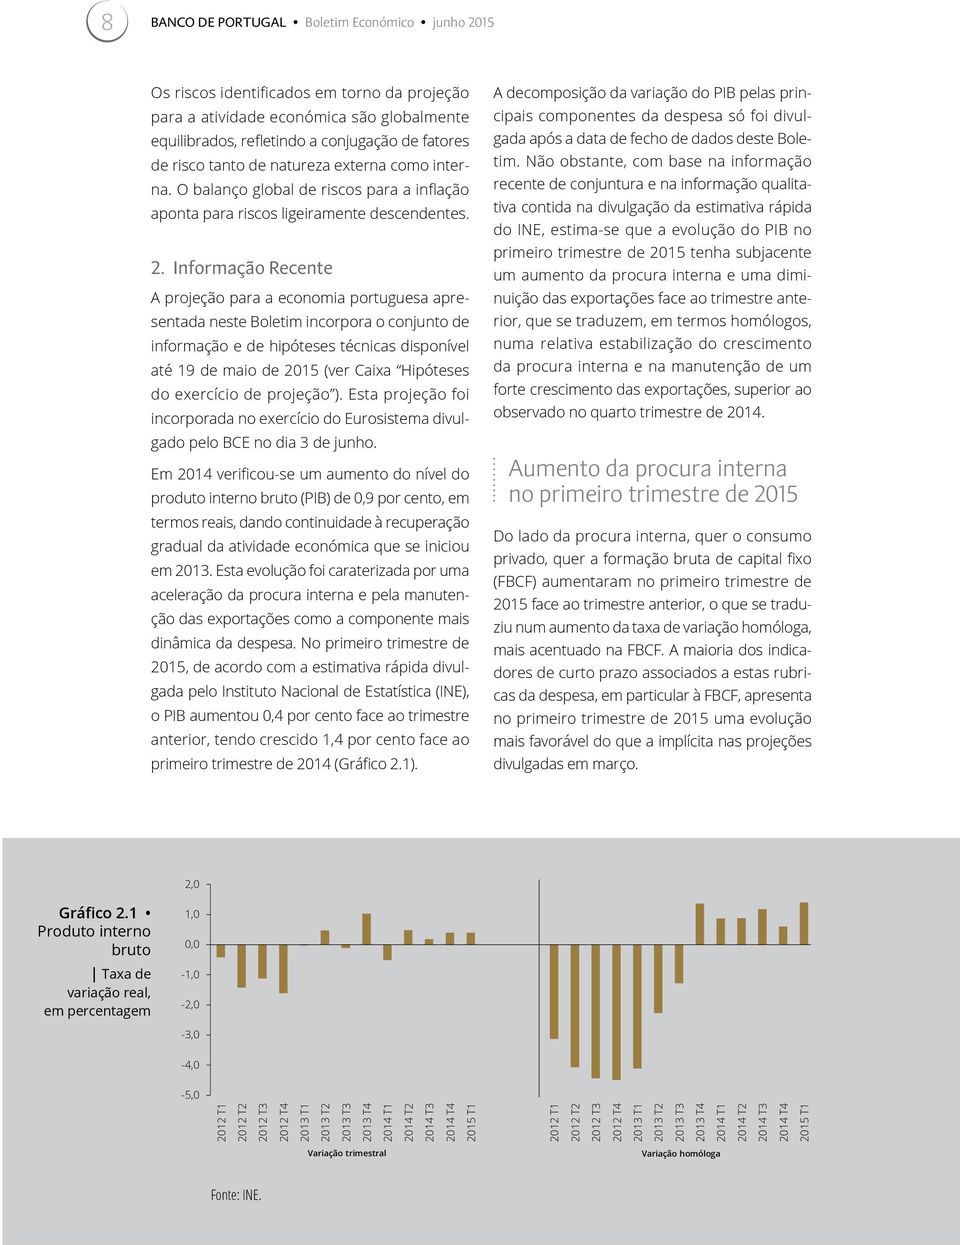 Informação Recente A projeção para a economia portuguesa apresentada neste Boletim incorpora o conjunto de informação e de hipóteses técnicas disponível até 19 de maio de 2015 (ver Caixa Hipóteses do